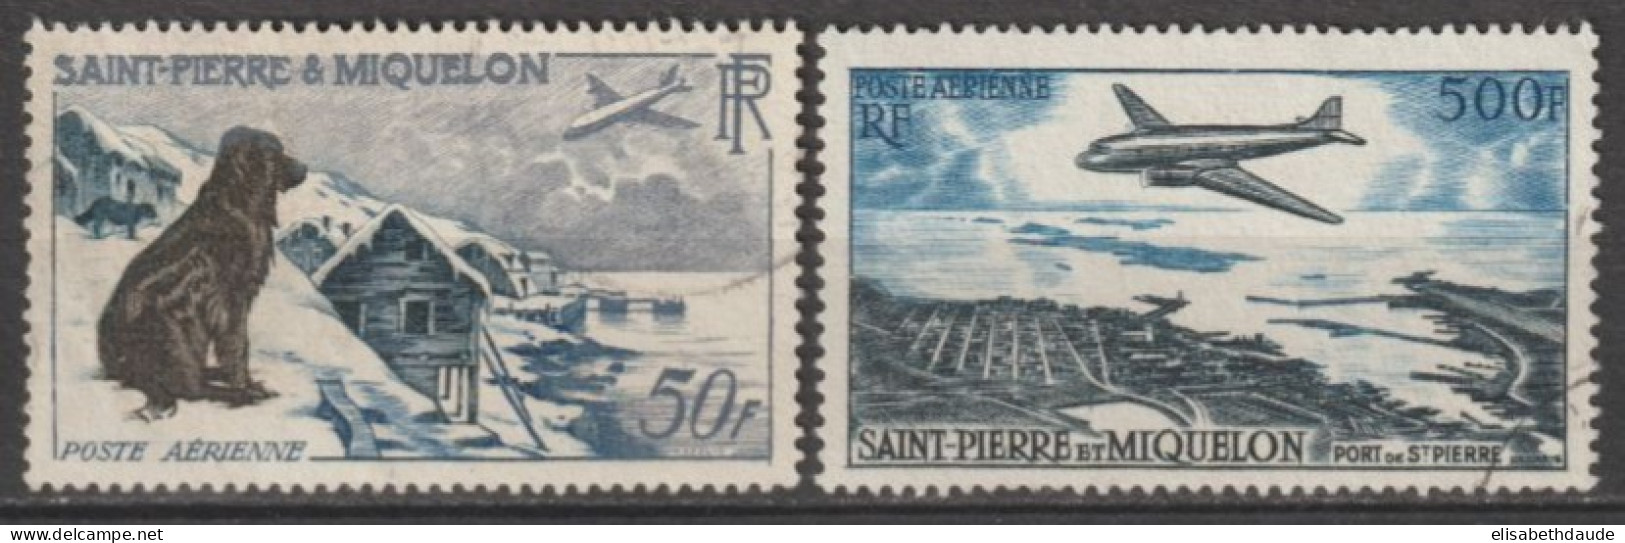 SPM - 1956/57 - POSTE AERIENNE - YVERT N° 23/24 OBLITERES - COTE = 60 EUR. - Used Stamps